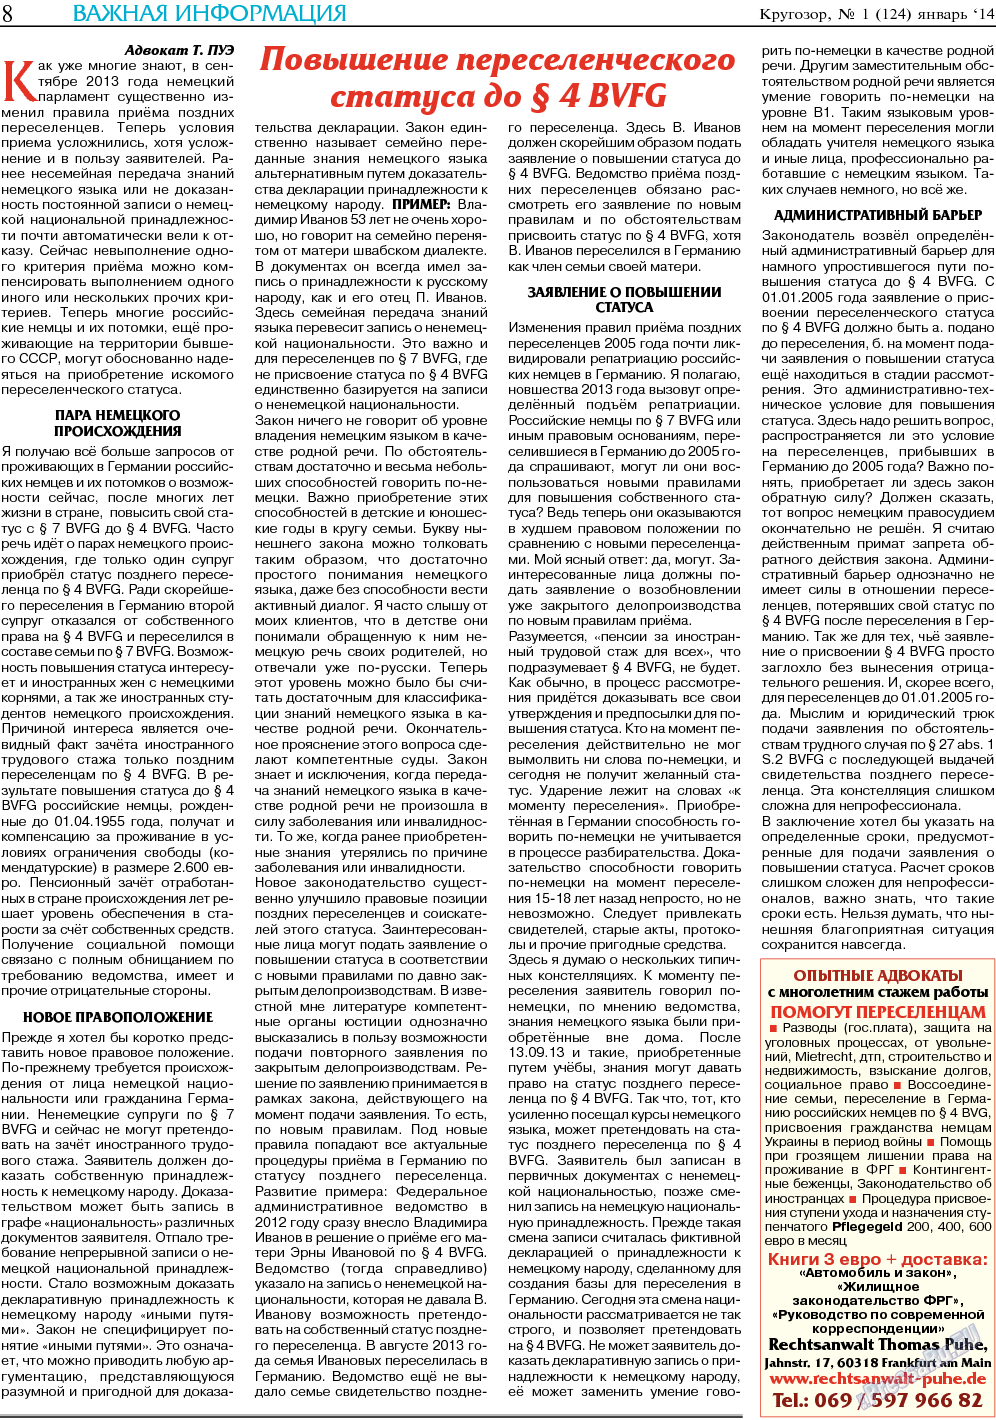 Кругозор (газета). 2014 год, номер 1, стр. 8